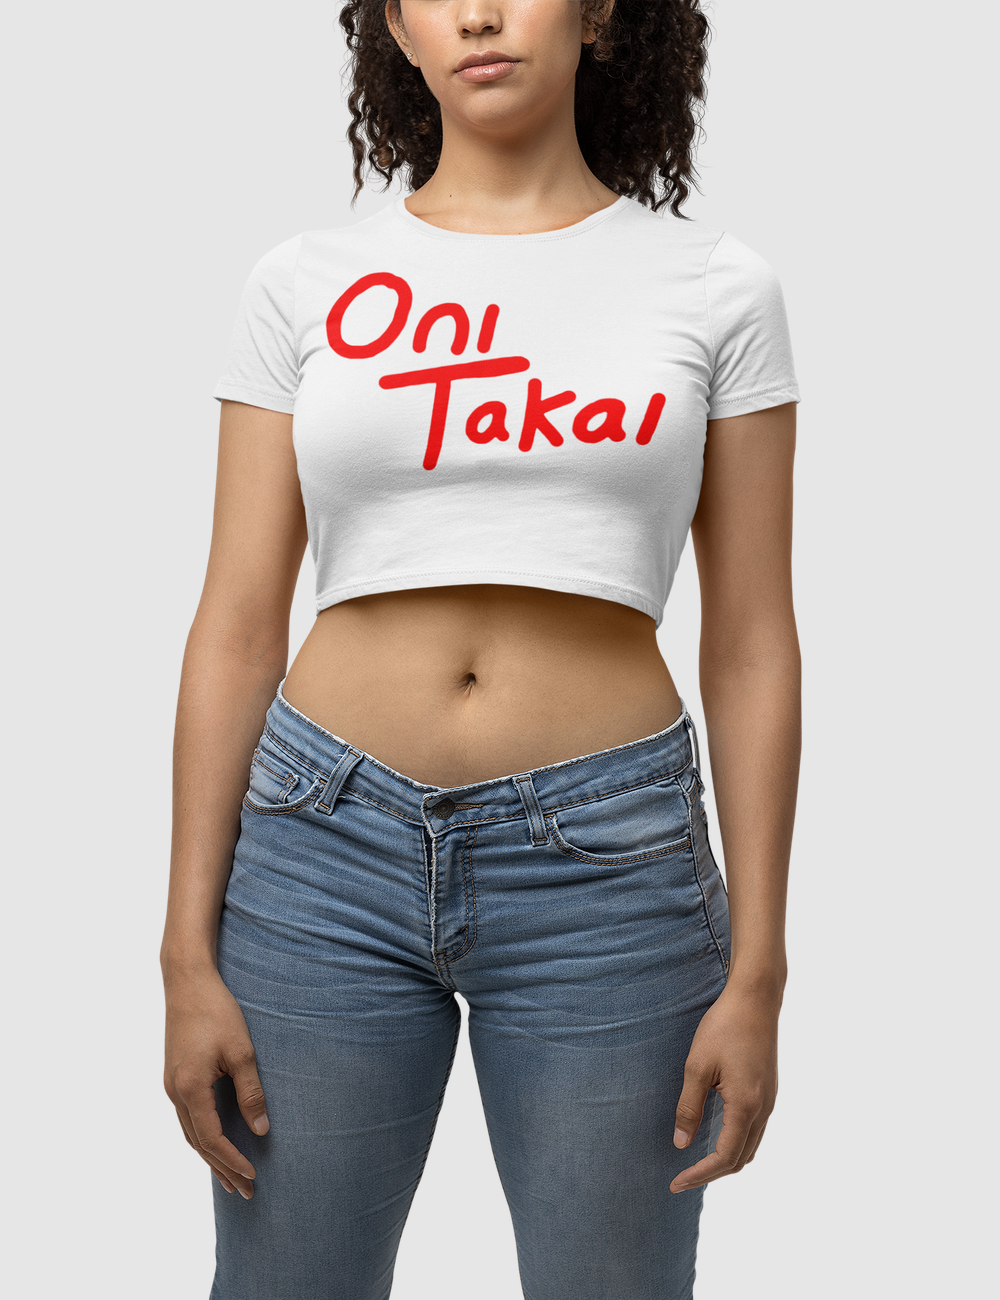 Casual OniTakai Women's Fitted Crop Top T-Shirt OniTakai